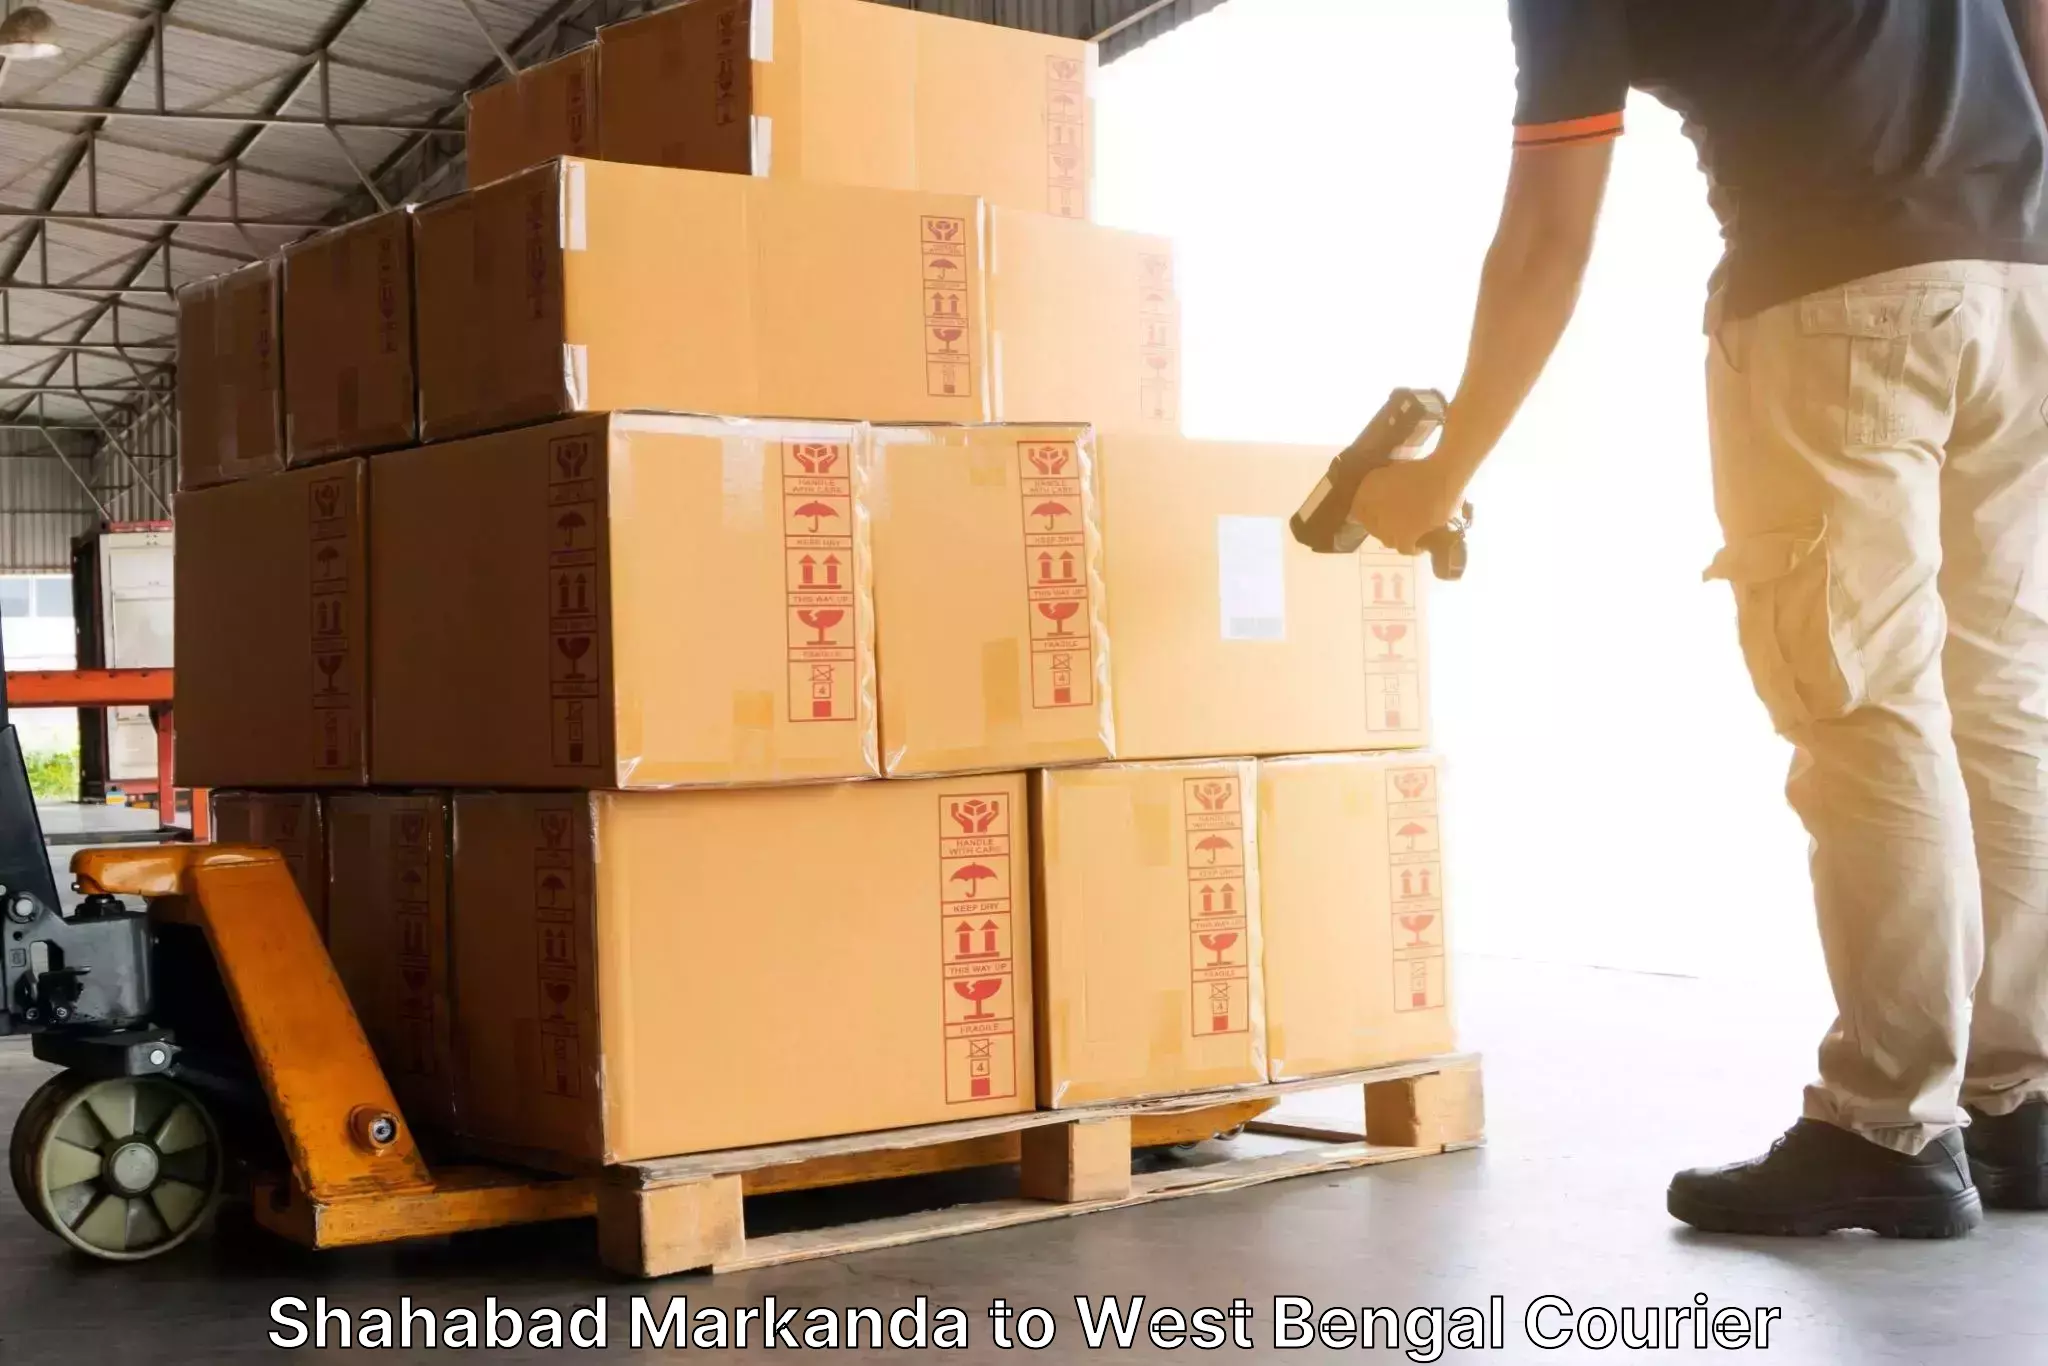 Express courier capabilities Shahabad Markanda to Kanchrapara